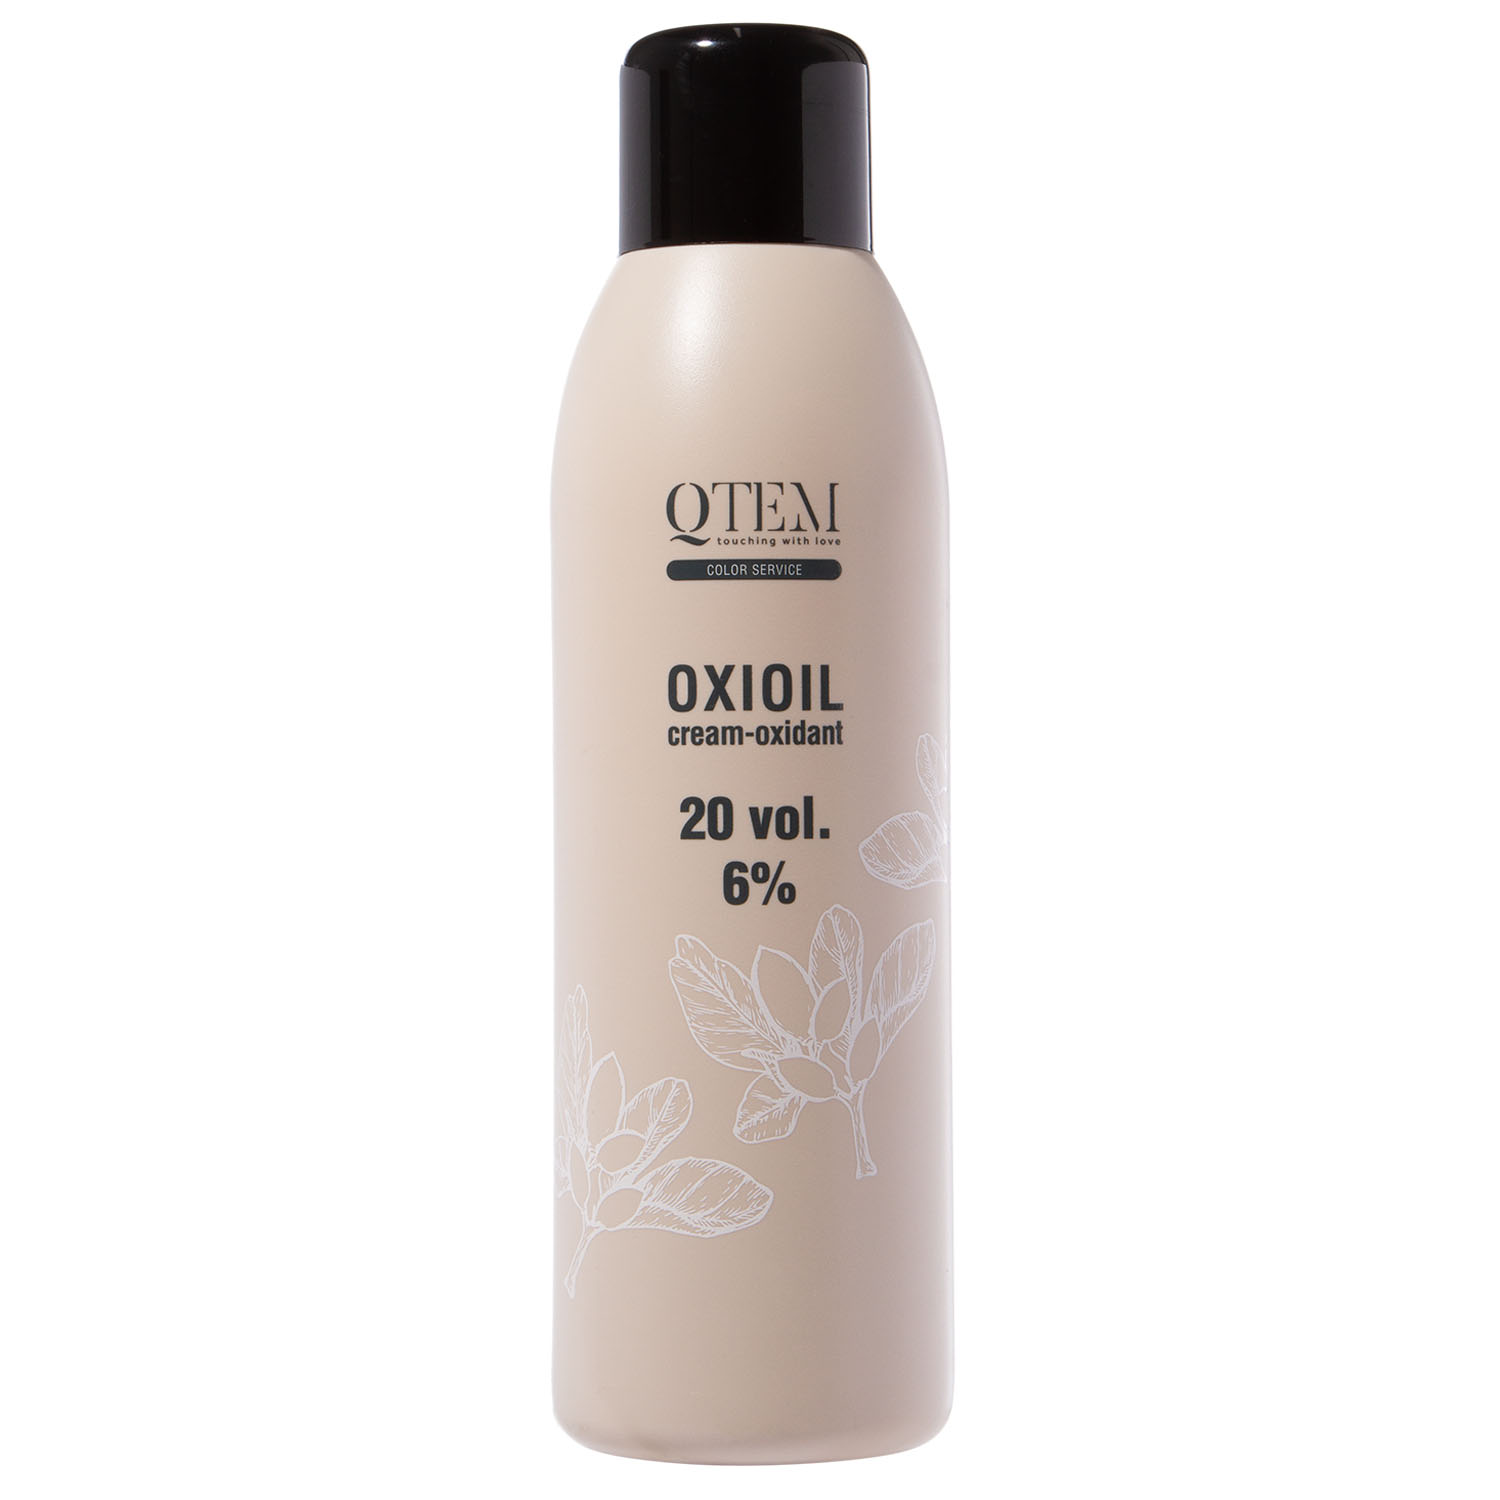 Qtem Универсальный крем-оксидант Oxioil 6% (20 Vol.), 1000 м